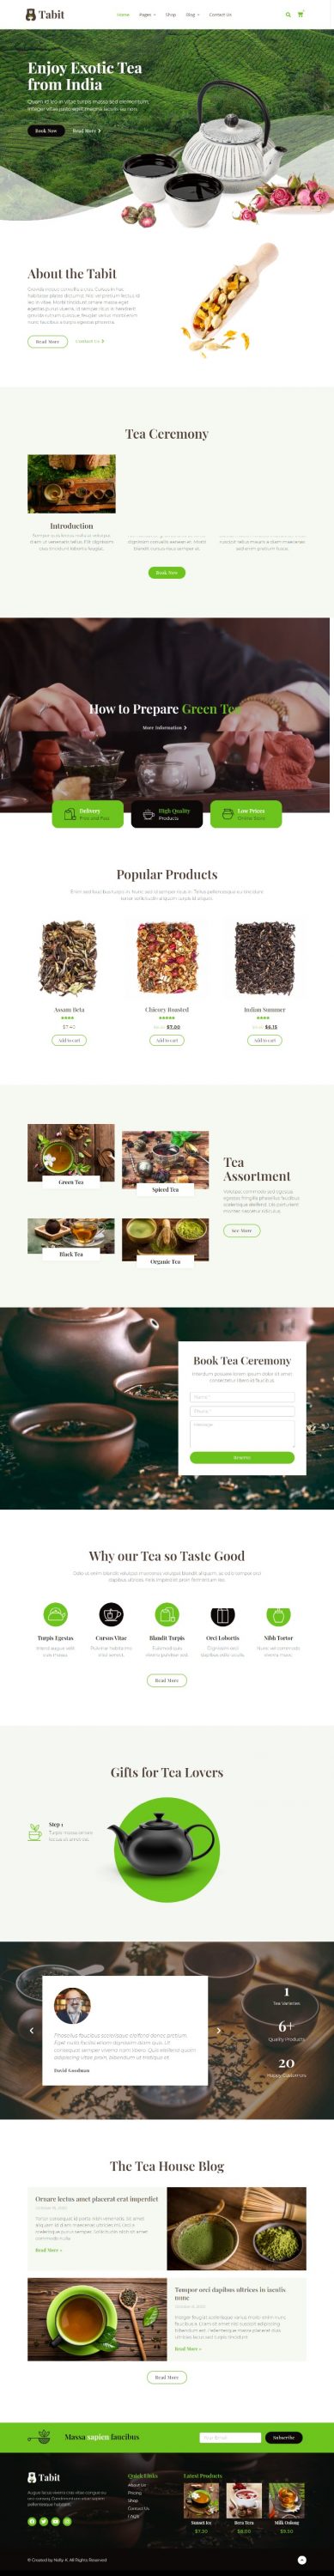 MẪU WEBSITE COFFEE SHOP - TABIT